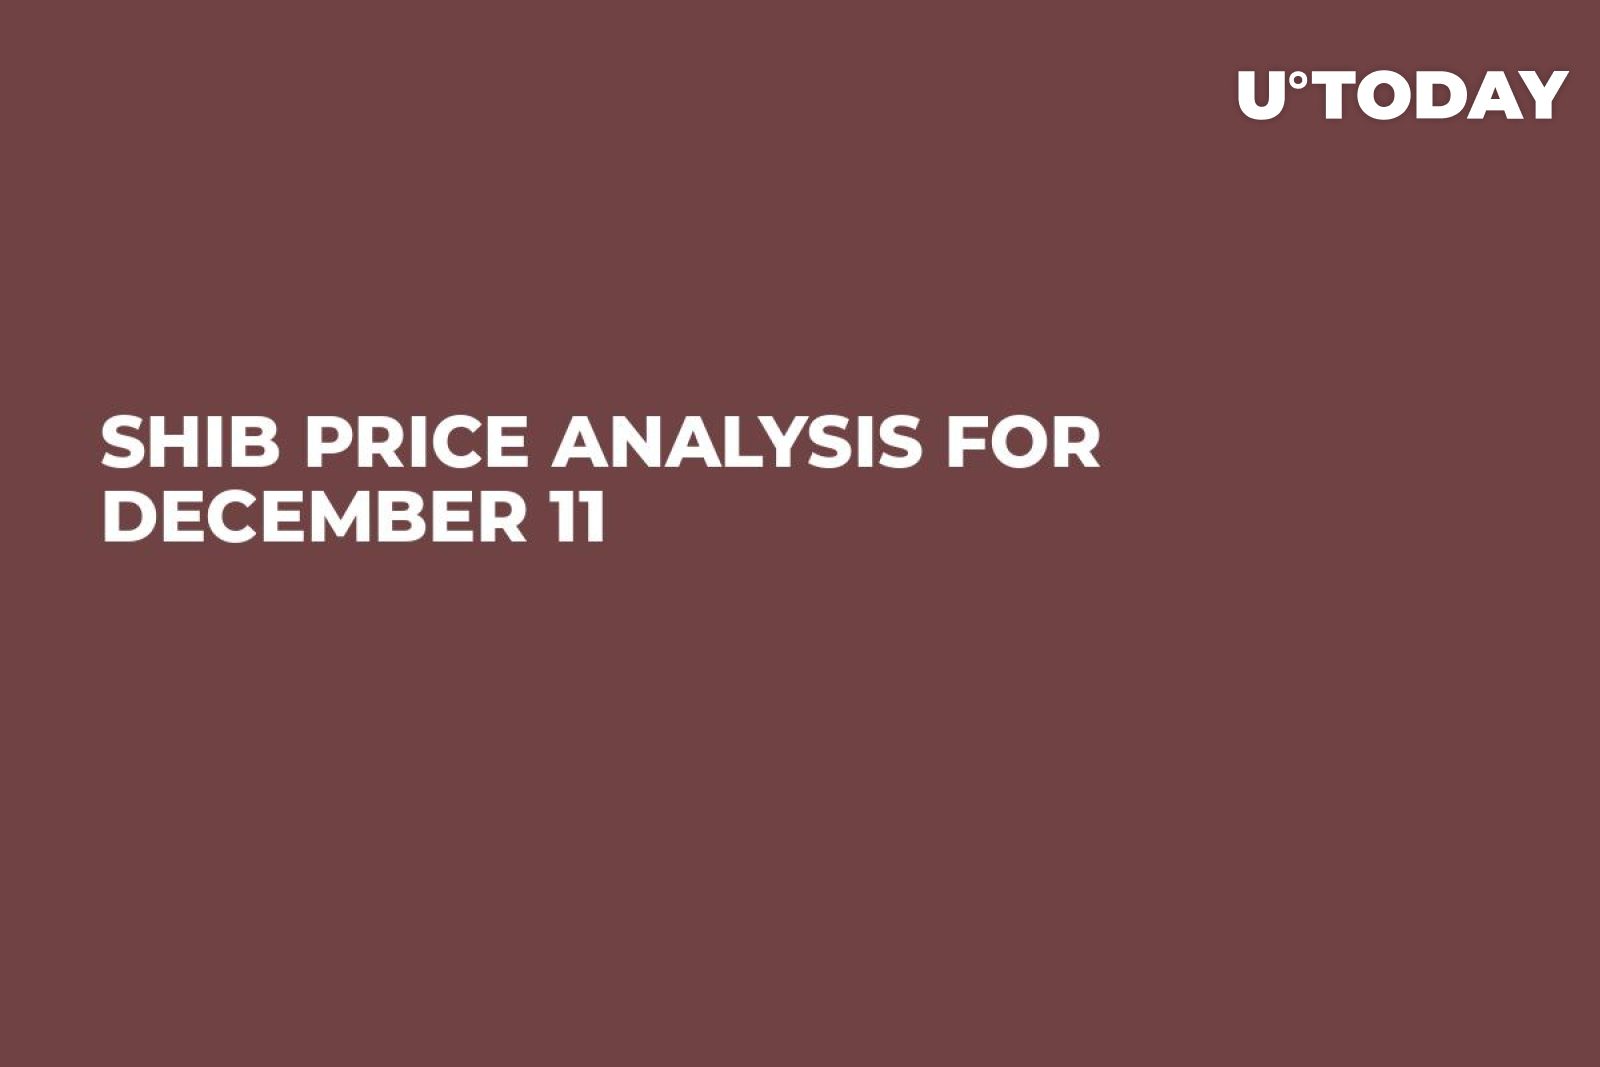 SHIB Price Analysis for December 11